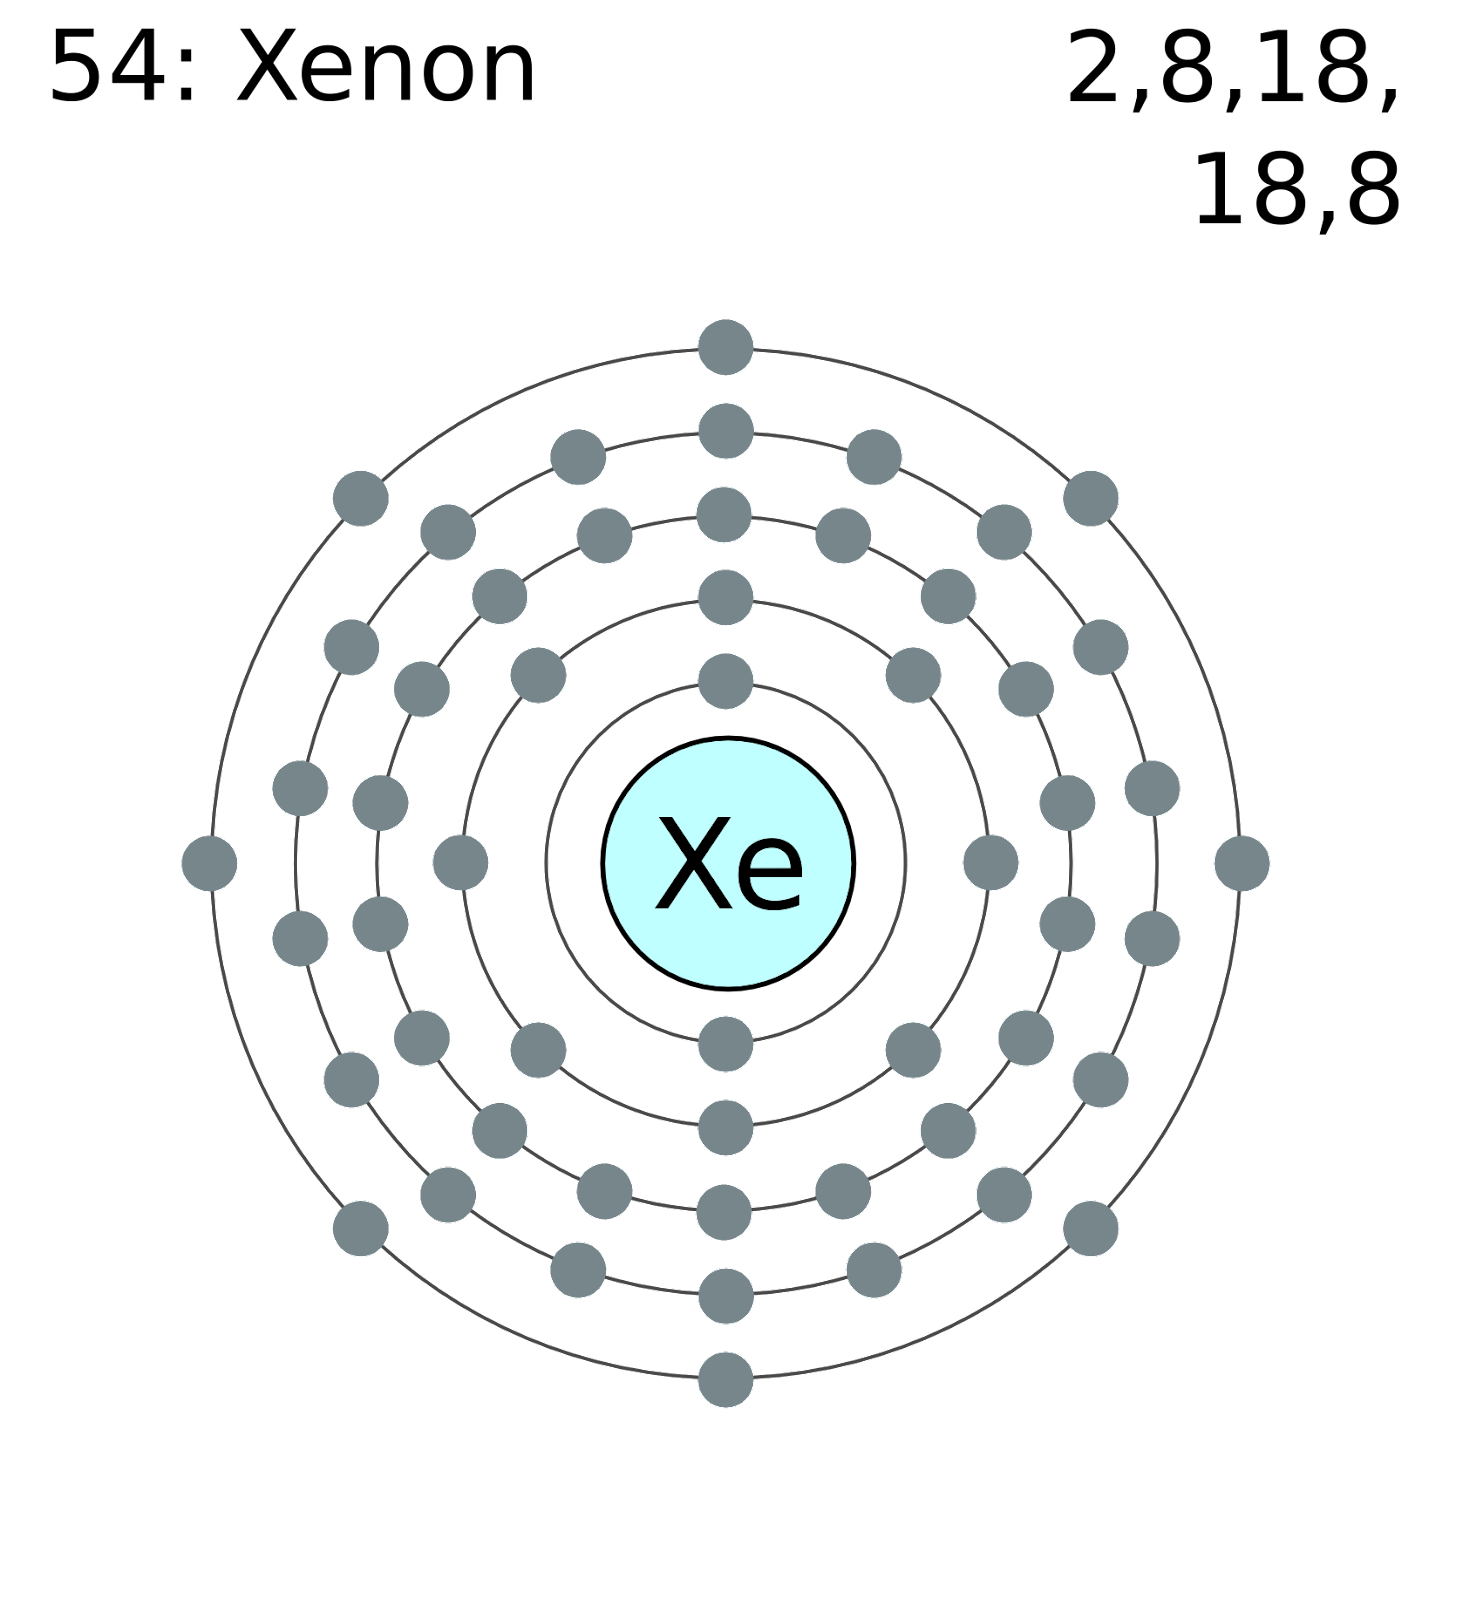 Xenon Structure